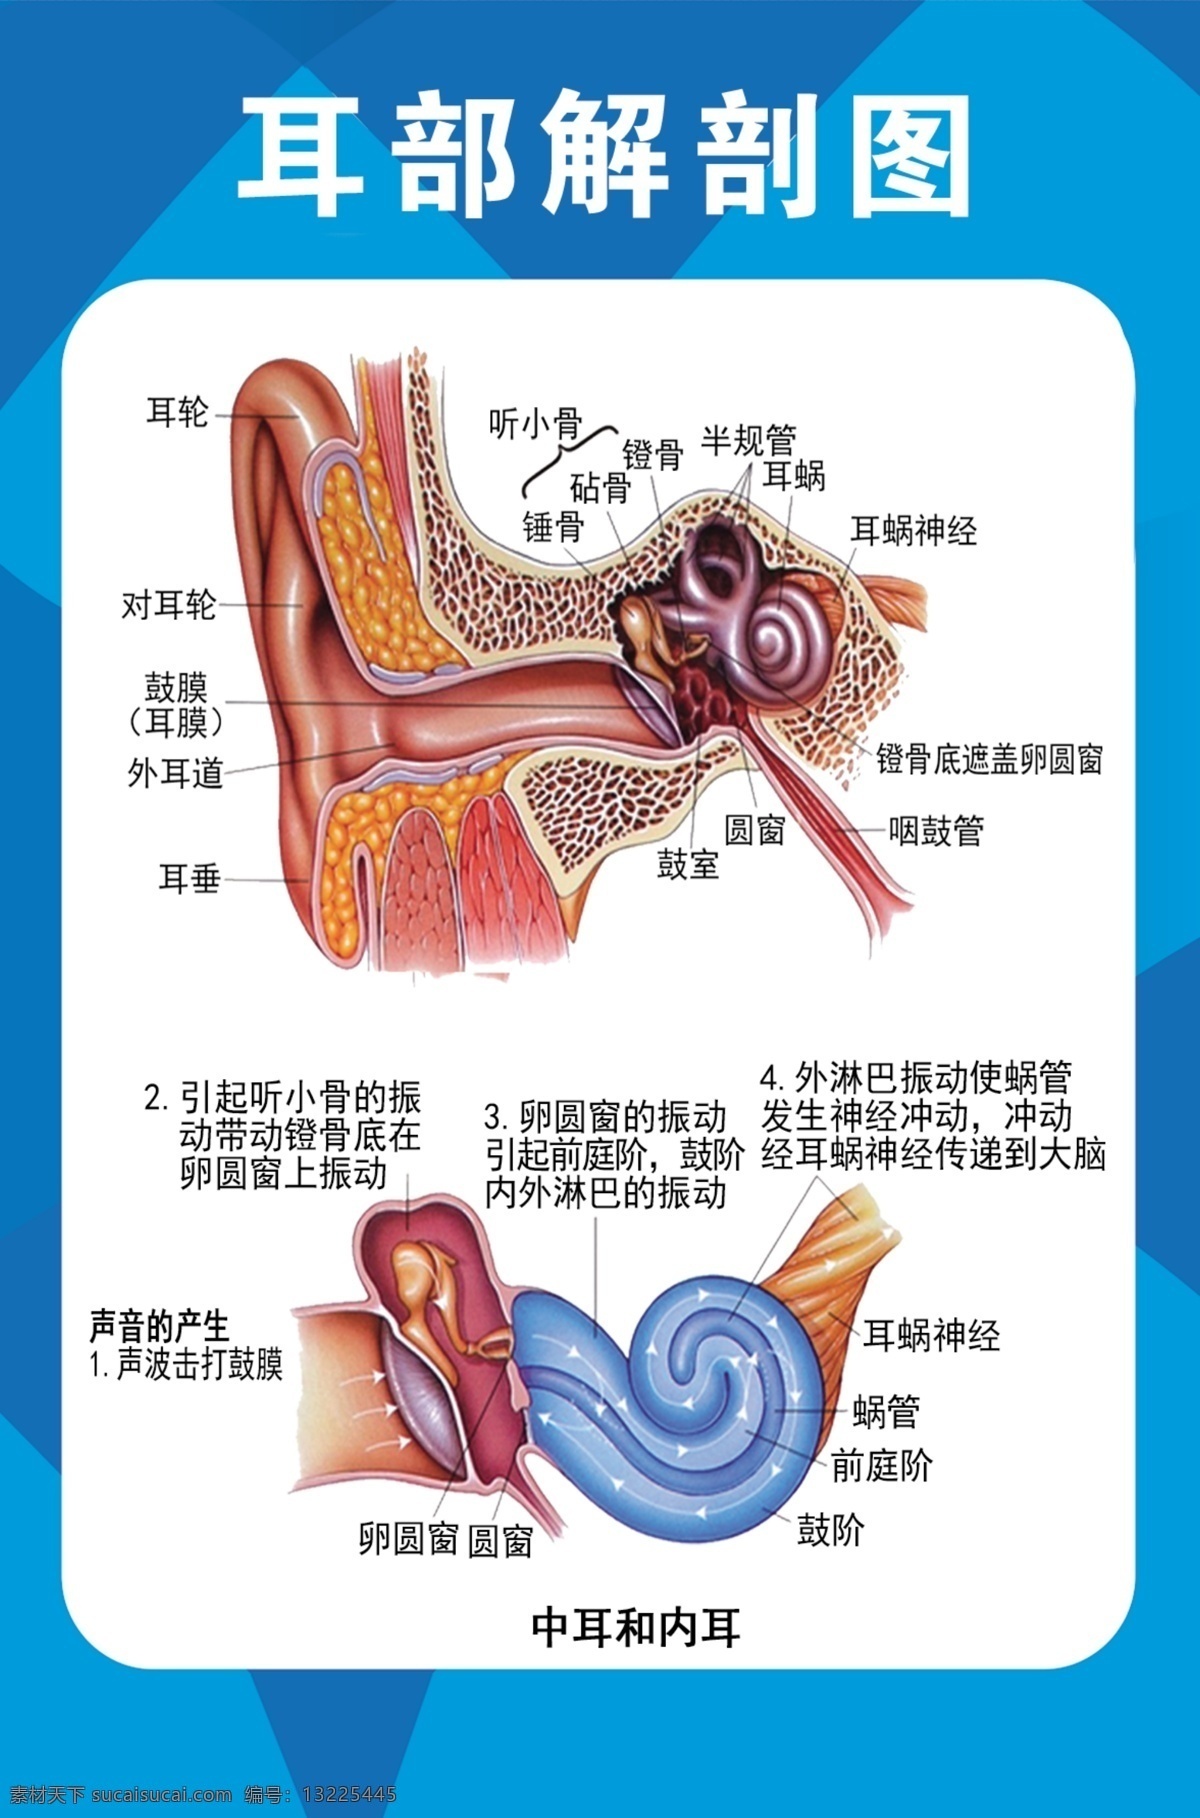 耳部解剖图 耳朵 结构图 五官挂图 海报 分层